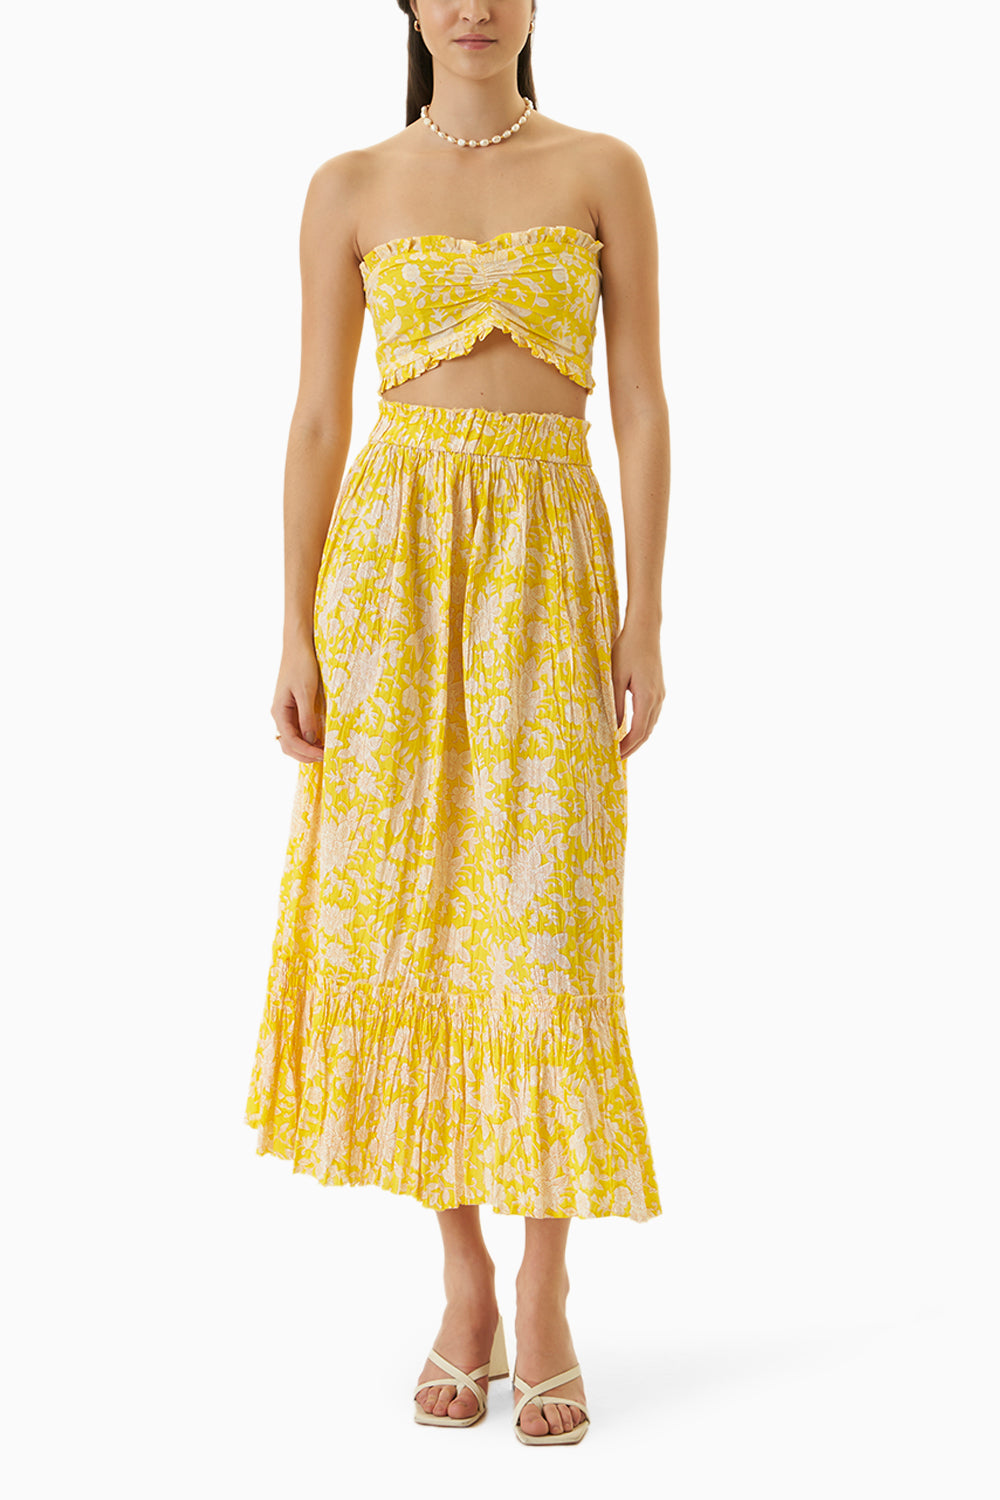 The Yellow Mysore Skirt